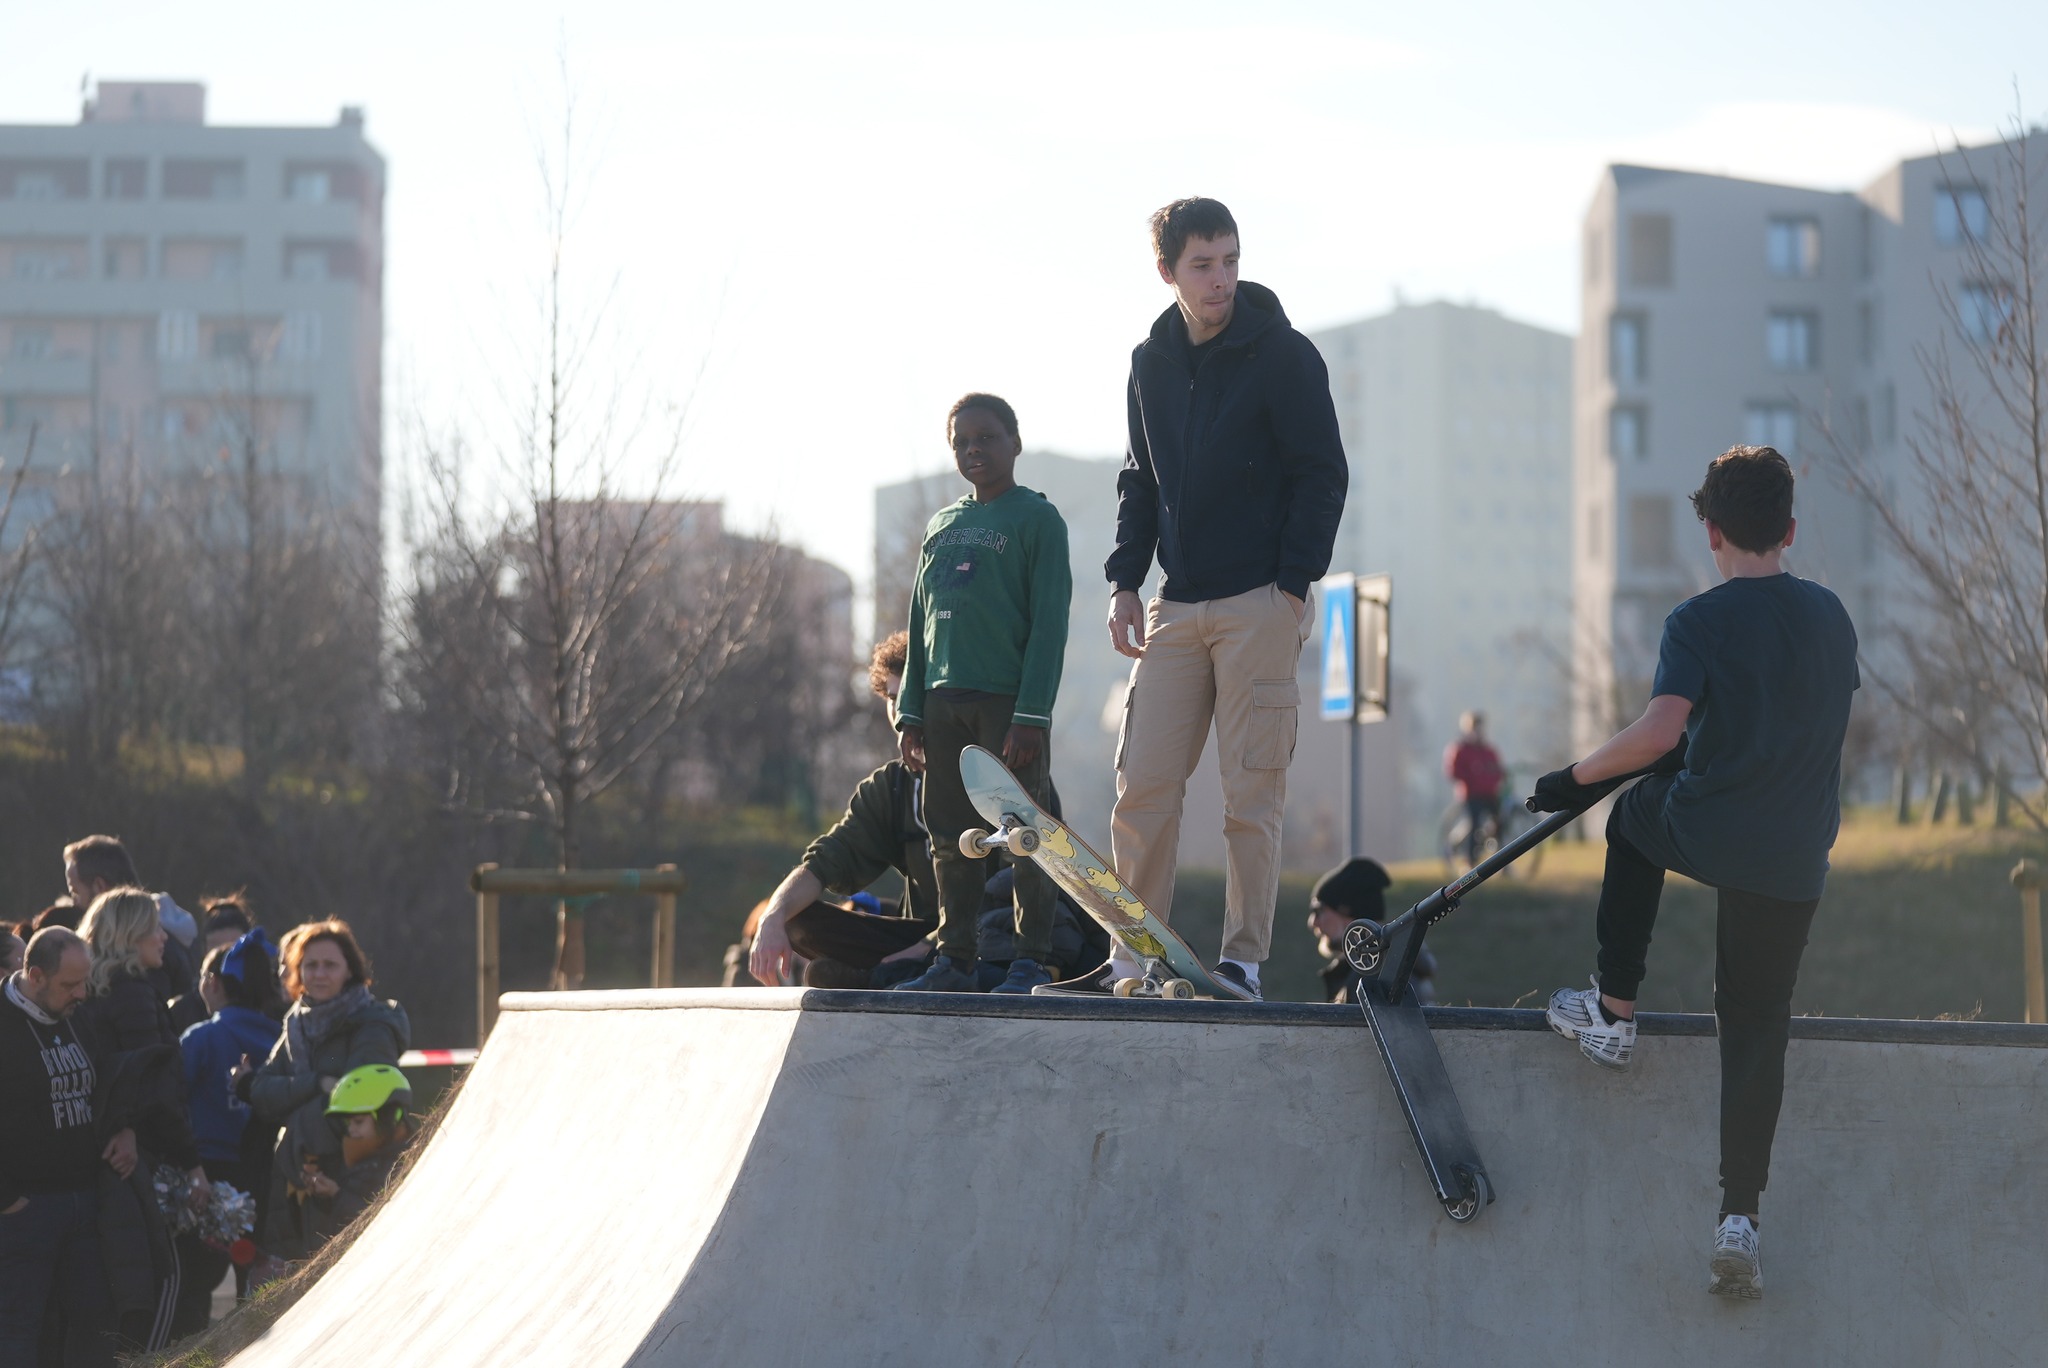 Inaugurazione skatepark: ragazzi con gli skate